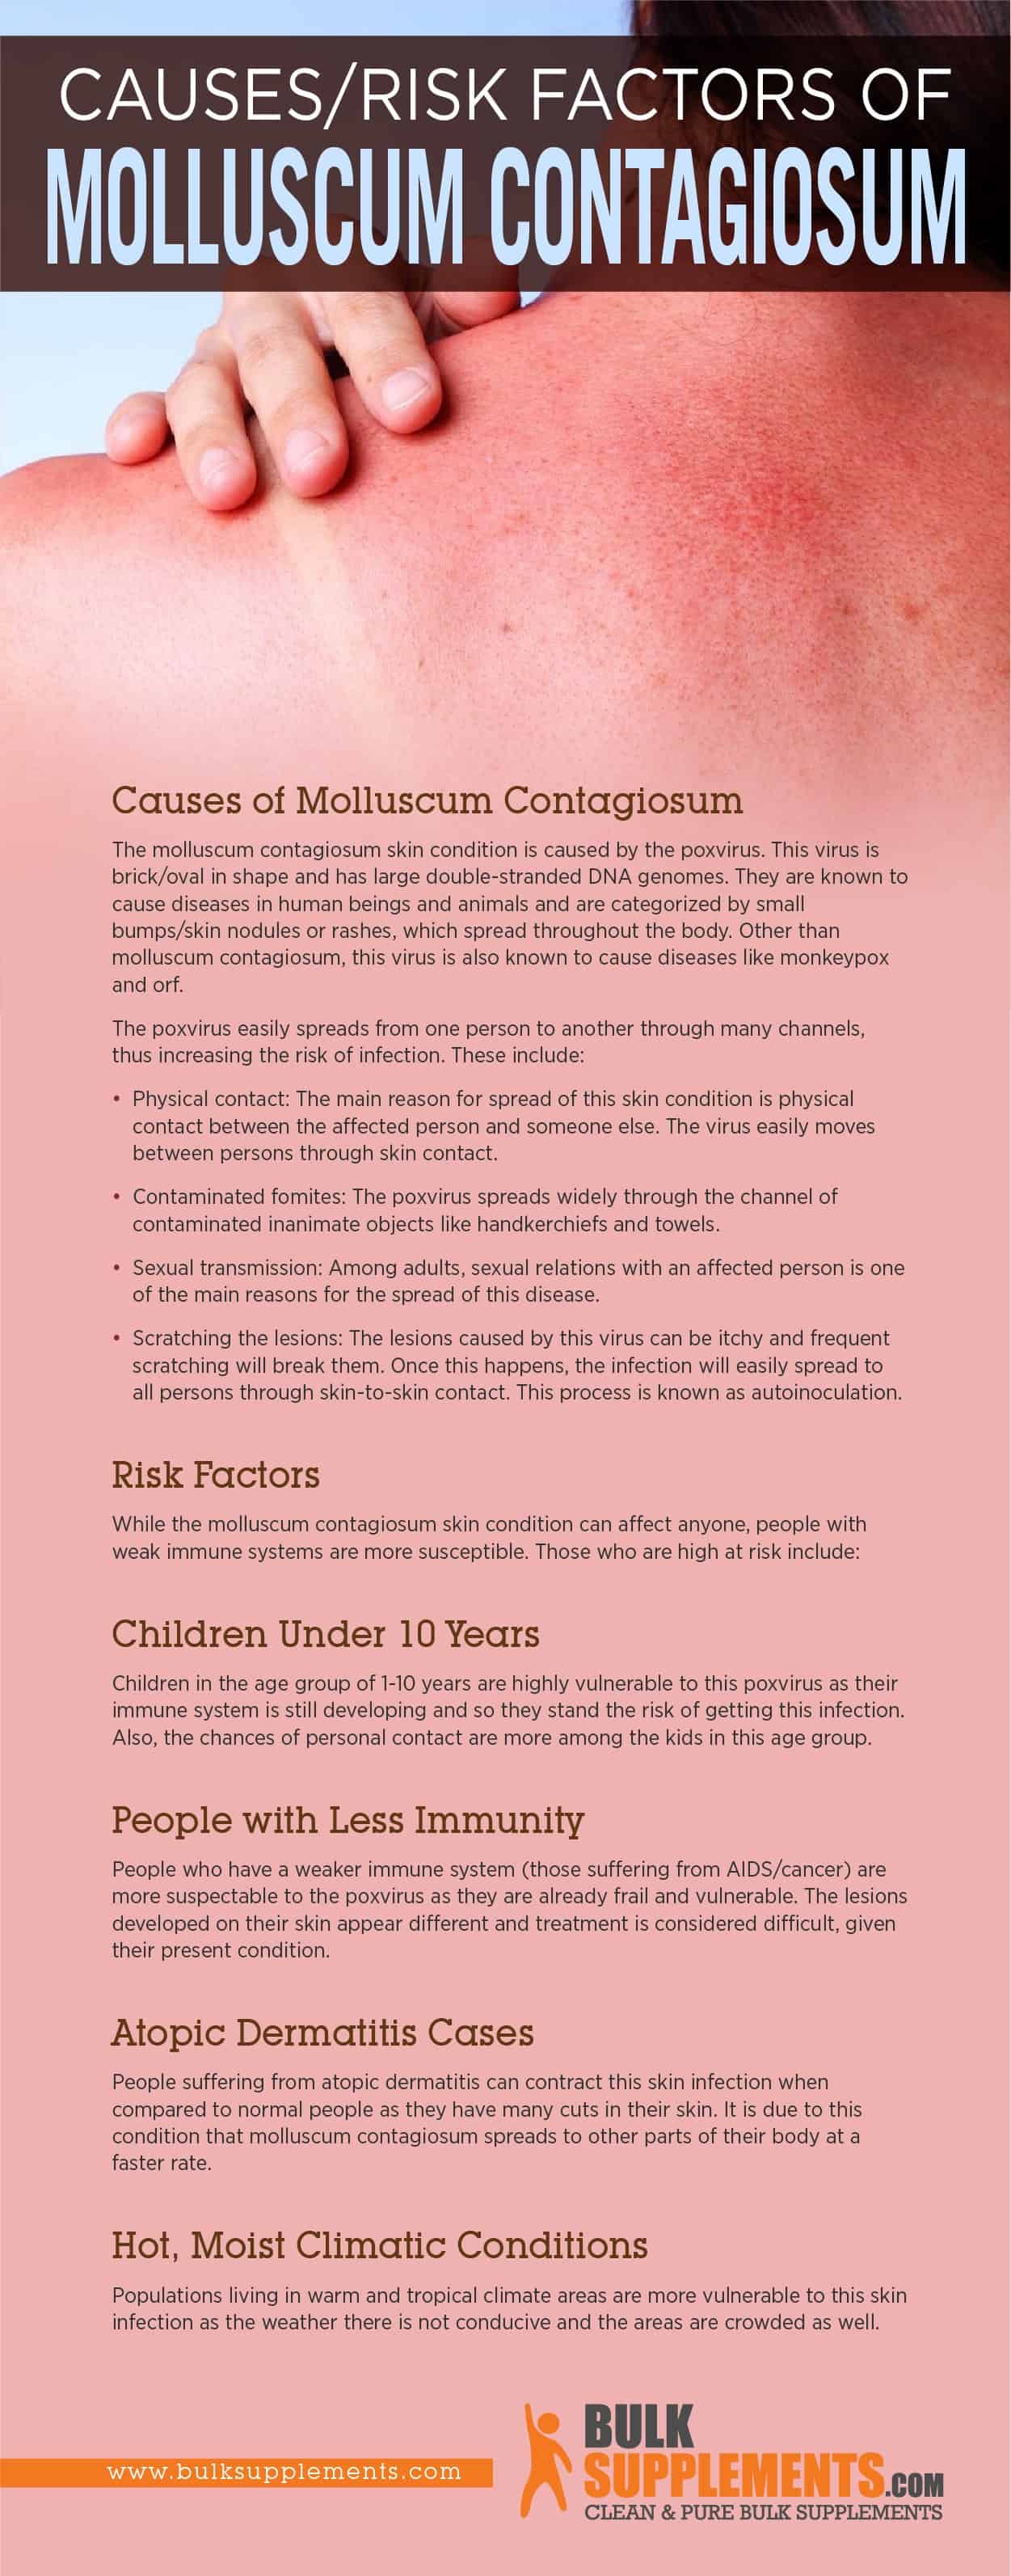 Molluscum Contagiosum Pictures And Symptoms